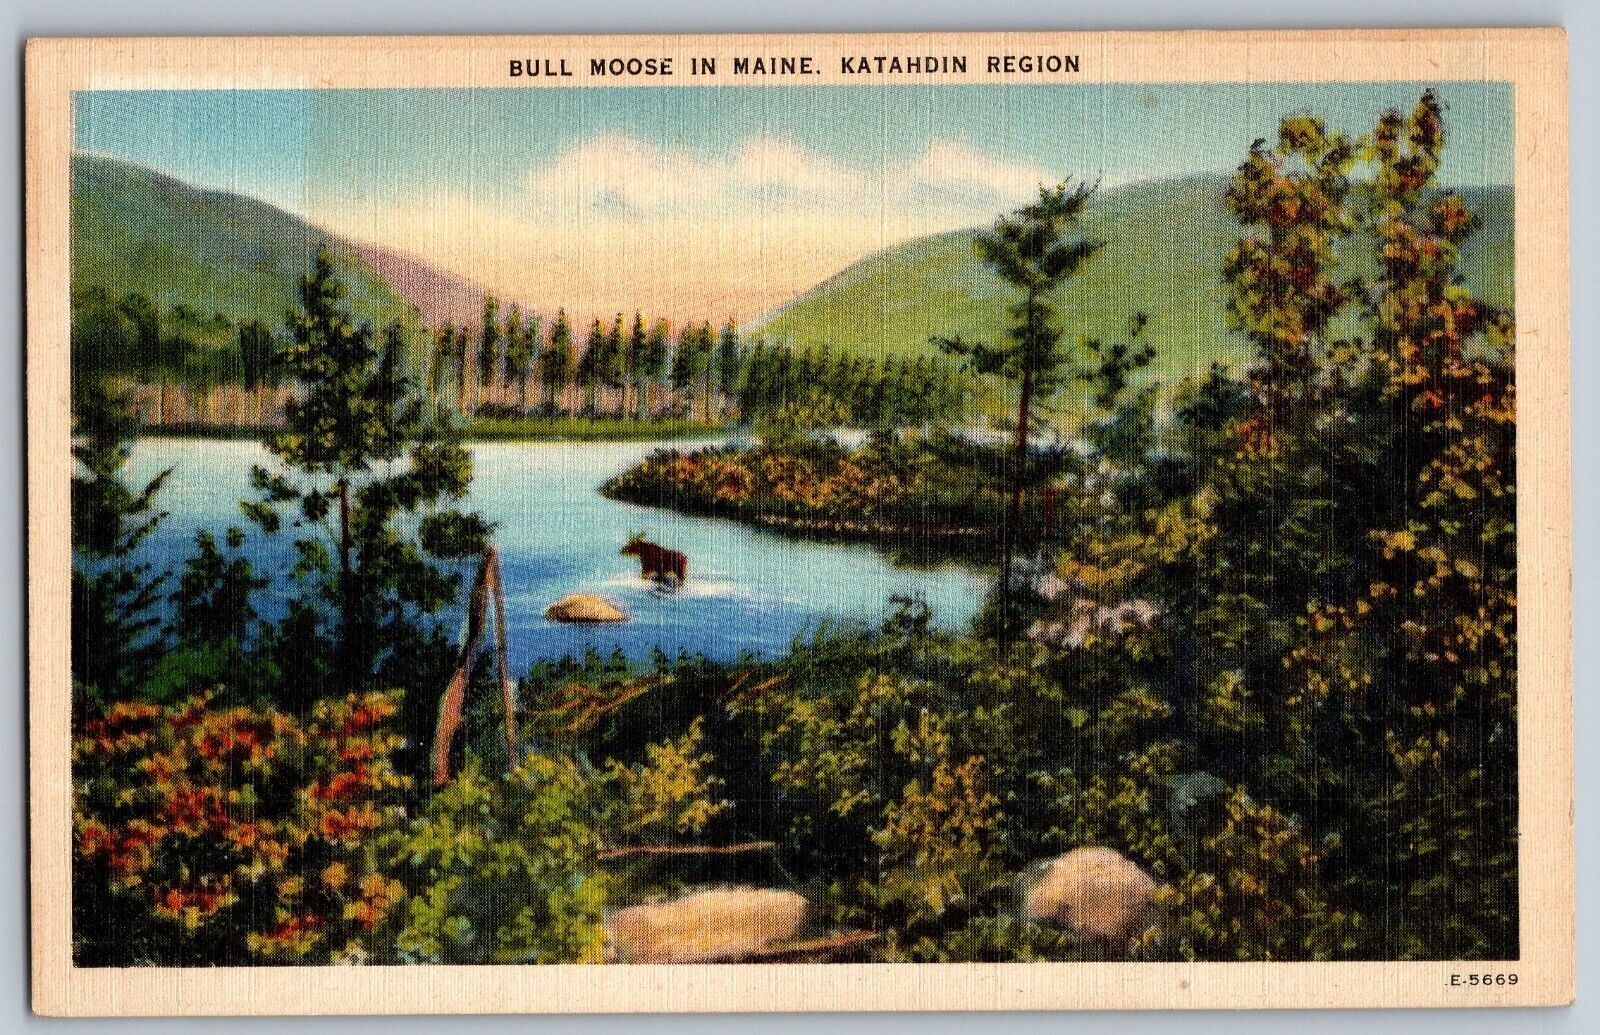 Katahdin Region, Maine ME - Bull Moose in Maine - Vintage Postcard - Unposted